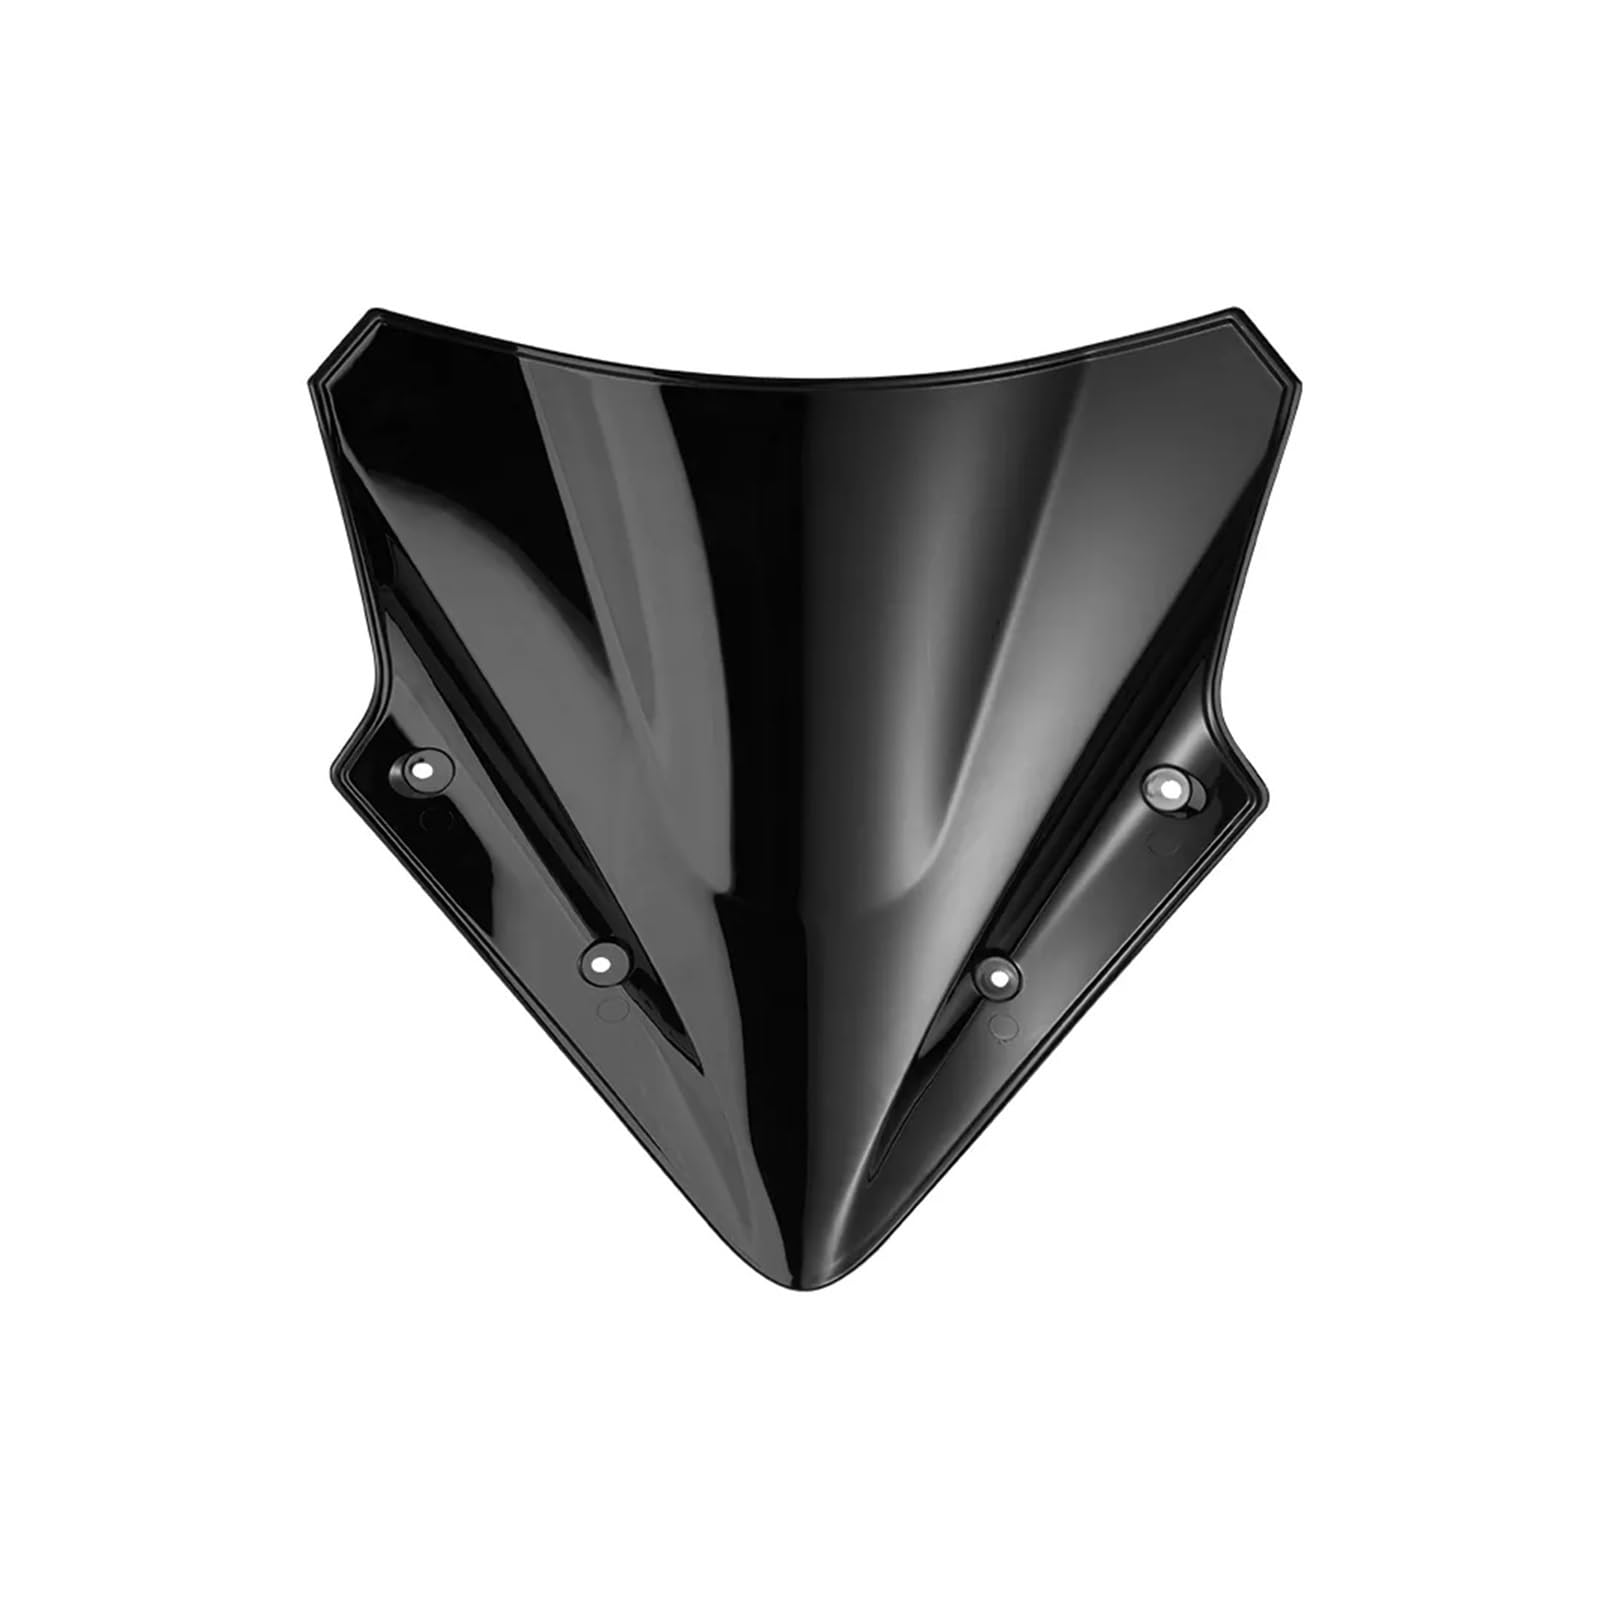 Für Kawasaki Für Ninja Für 650 2017 2018 2019 Windschutzscheibe Windschutz Windschutz Motorrad Zubehör Windschild Motorrad Deflektor Windschutzscheibe (Farbe : Schwarz) von ZHANGZHENGYAO